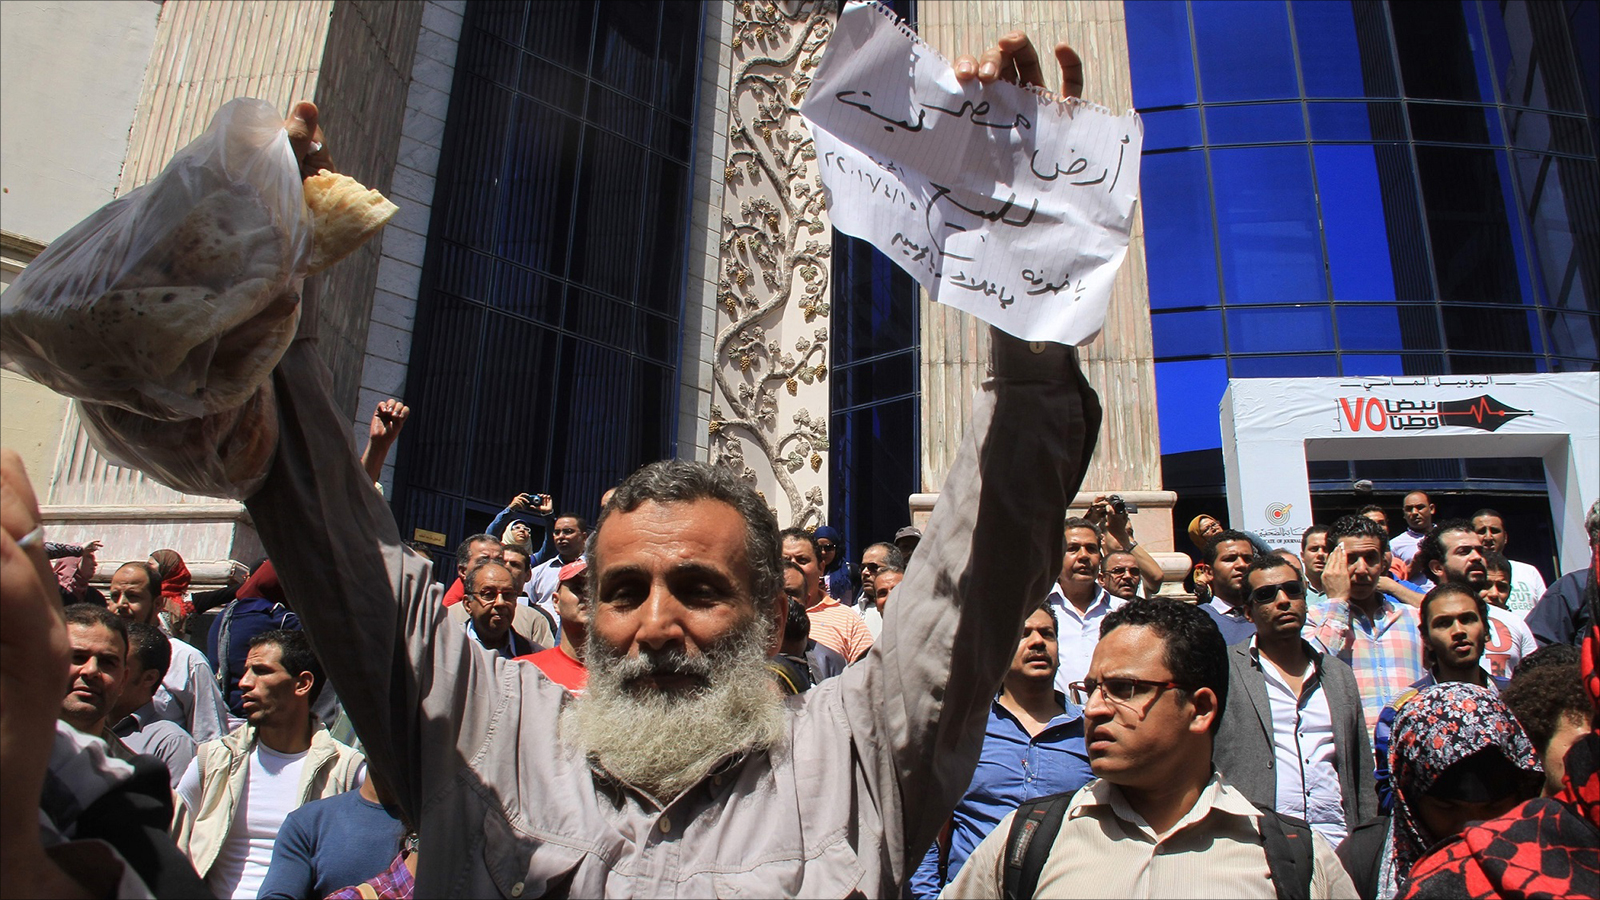 ‪الحكومة تحاول امتصاص الغضب الشعبي بالترويج لإدارة مصر للجزيرتين‬ (الجزيرة)